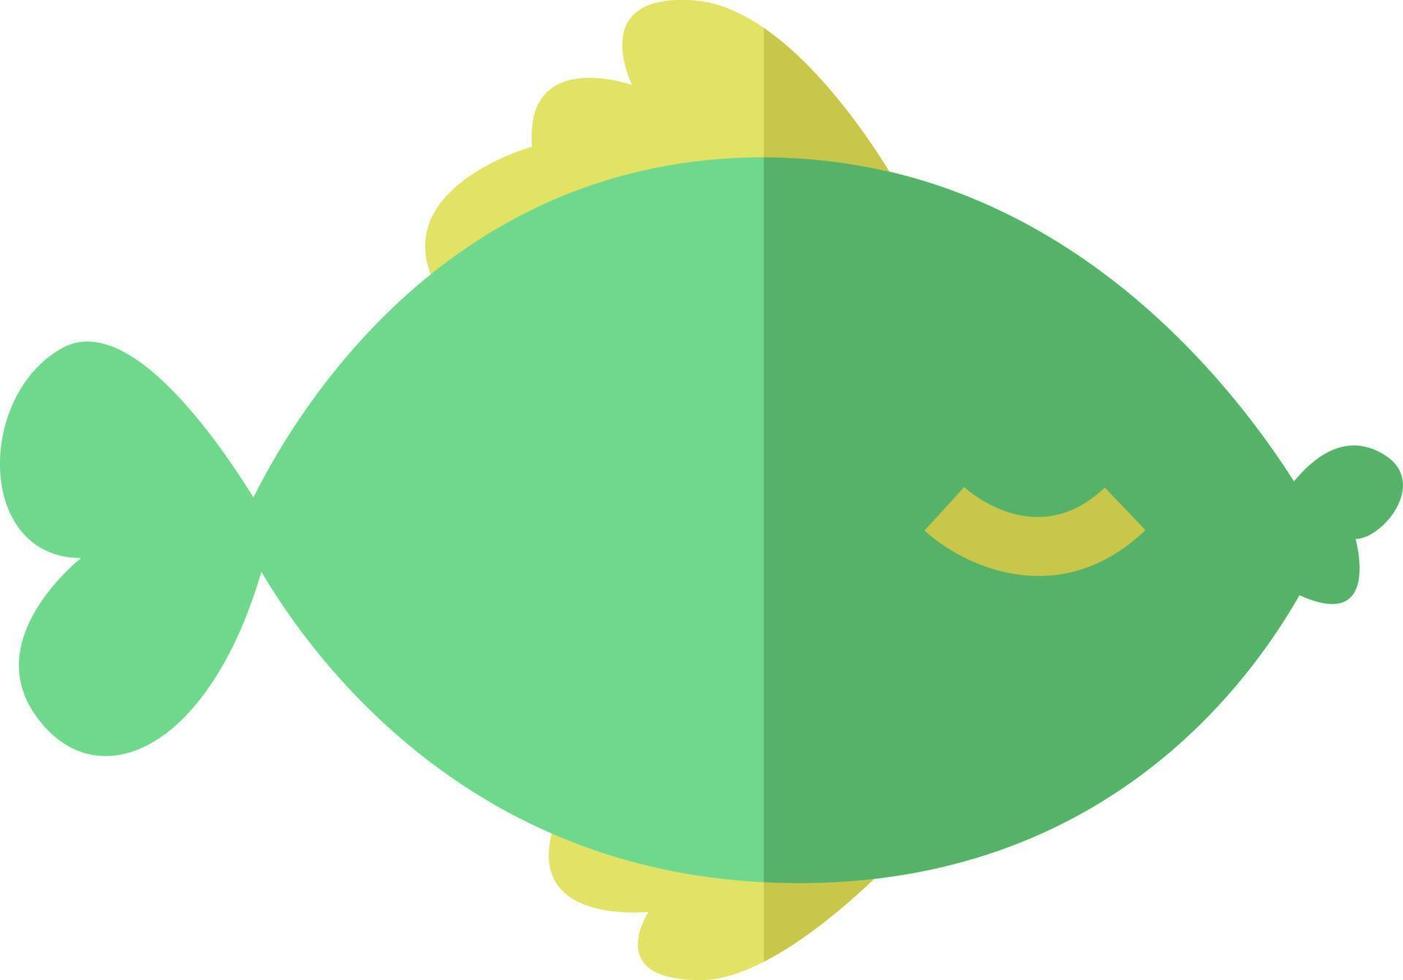 poisson vert, illustration, vecteur sur fond blanc.